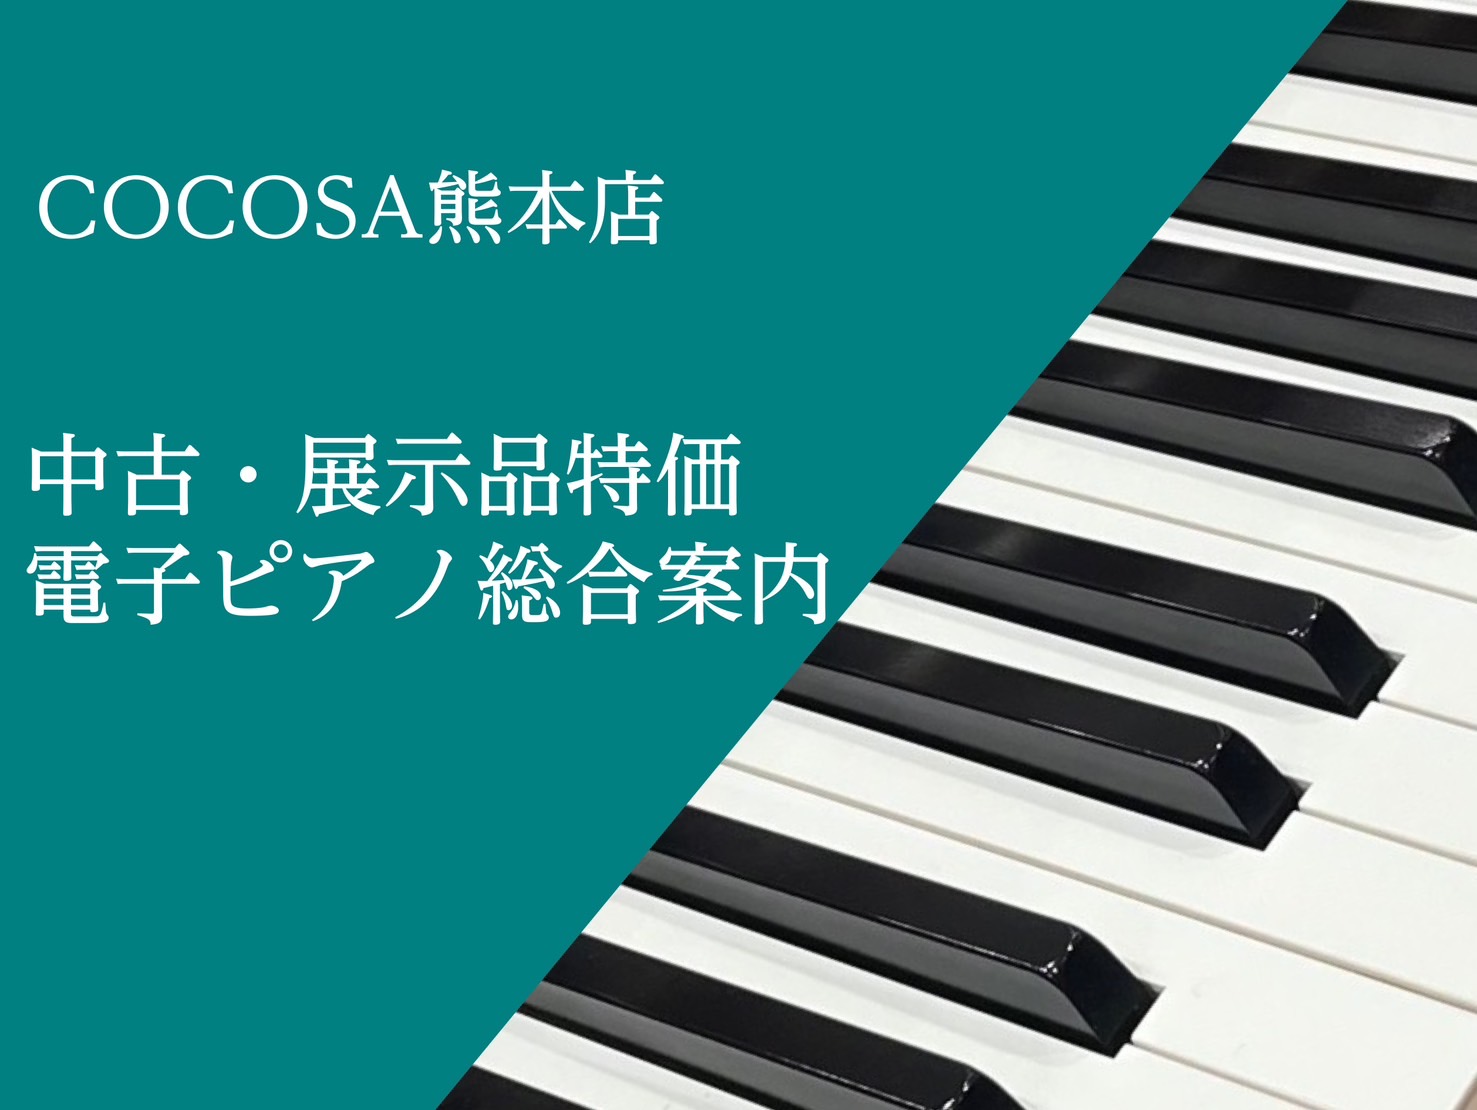 島村楽器COCOSA熊本店電子ピアノコーナーへようこそ✨ 皆さんこんにちは♪島村楽器COCOSA熊本店、ピアノアドバイザーの家入(いえいり)です♪本日は、即納可能でとってもお得な展示品特価の電子ピアノと中古電子ピアノのご案内いたします！ご不明な点などございましたら、お気軽にピアノアドバイザー家入まで […]